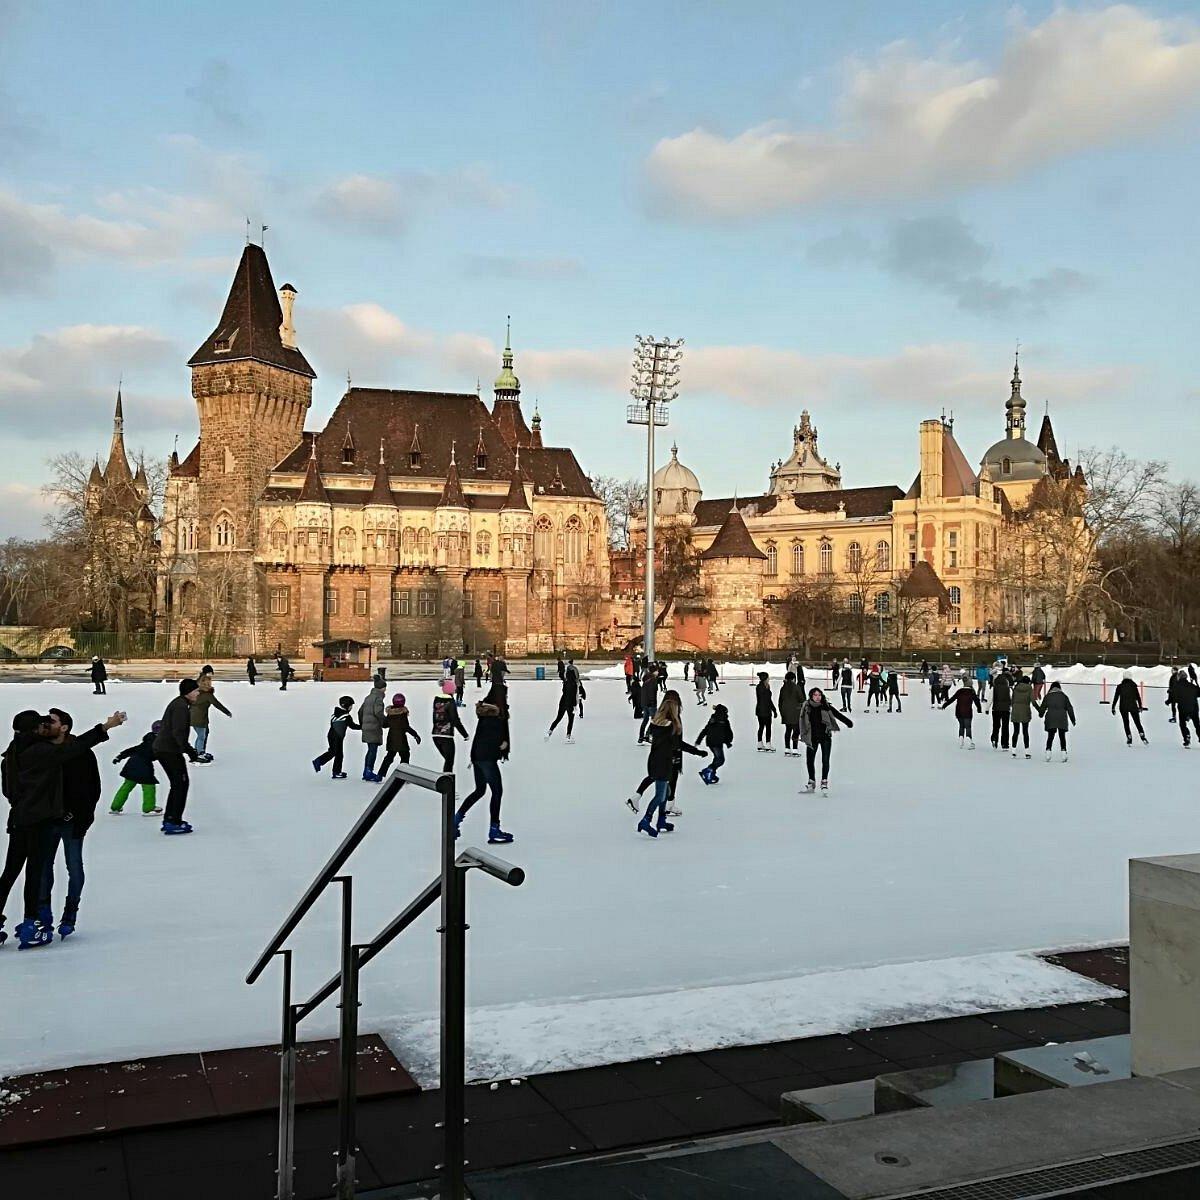 Patin à glace sur la plus grande patinoire d’Europe